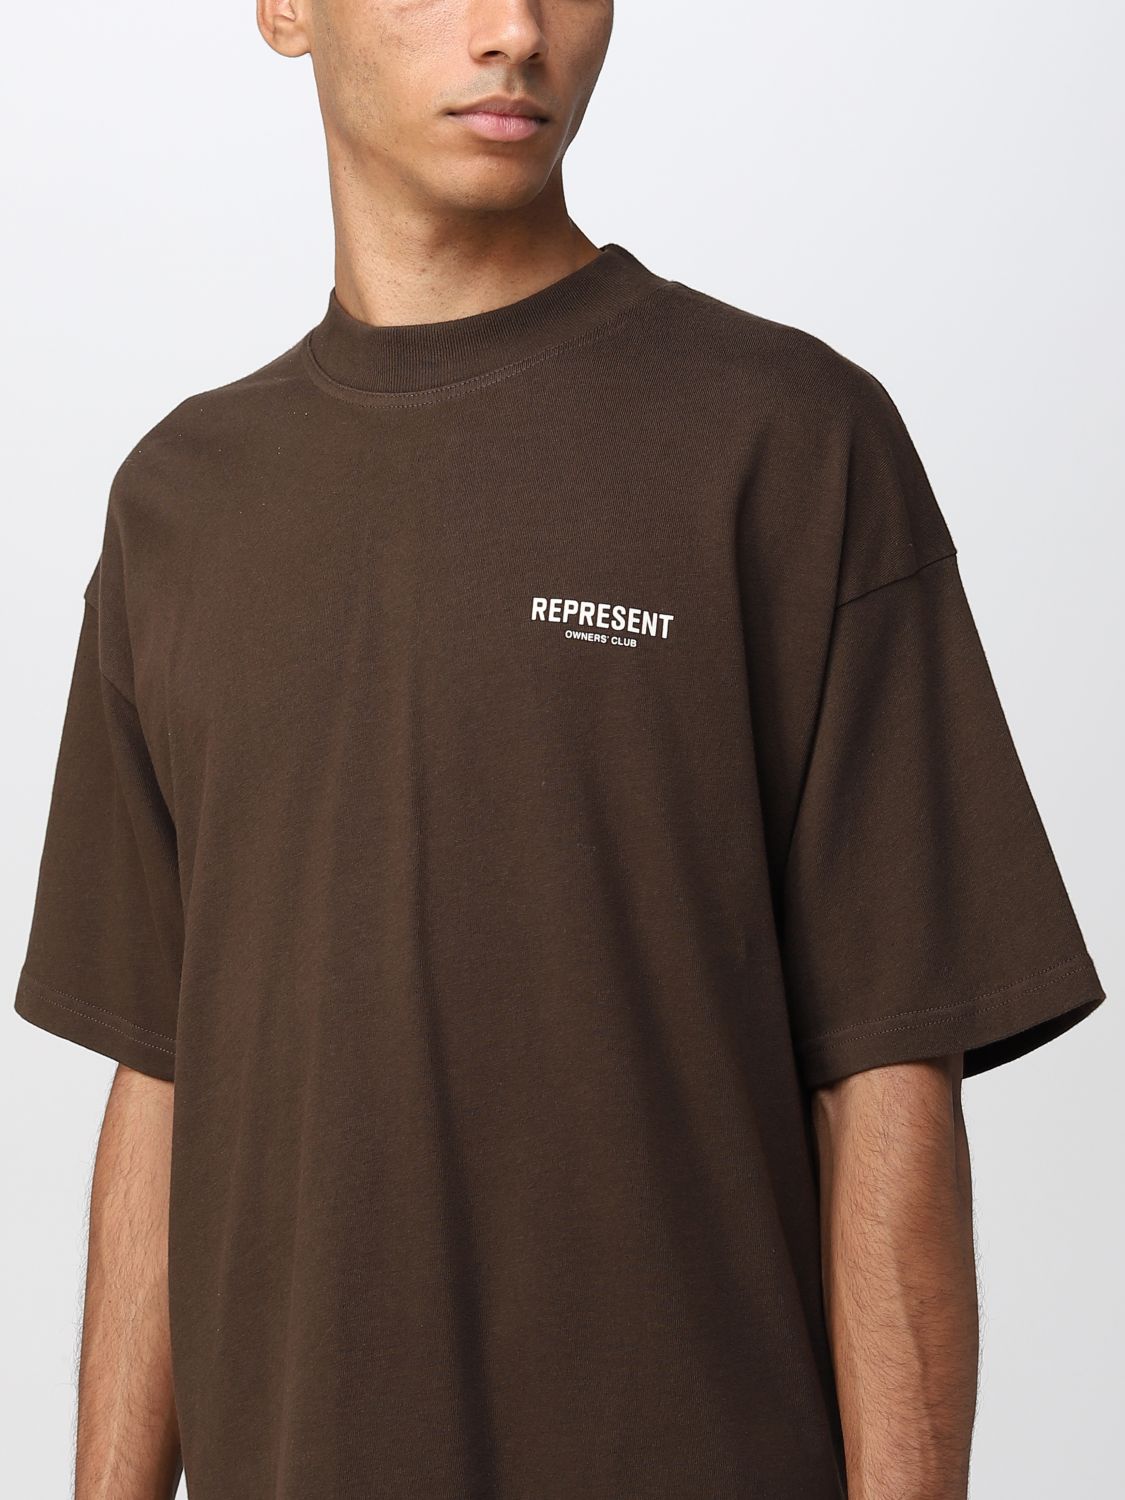 Tシャツ Represent: Tシャツ Represent メンズ ブラウン 3